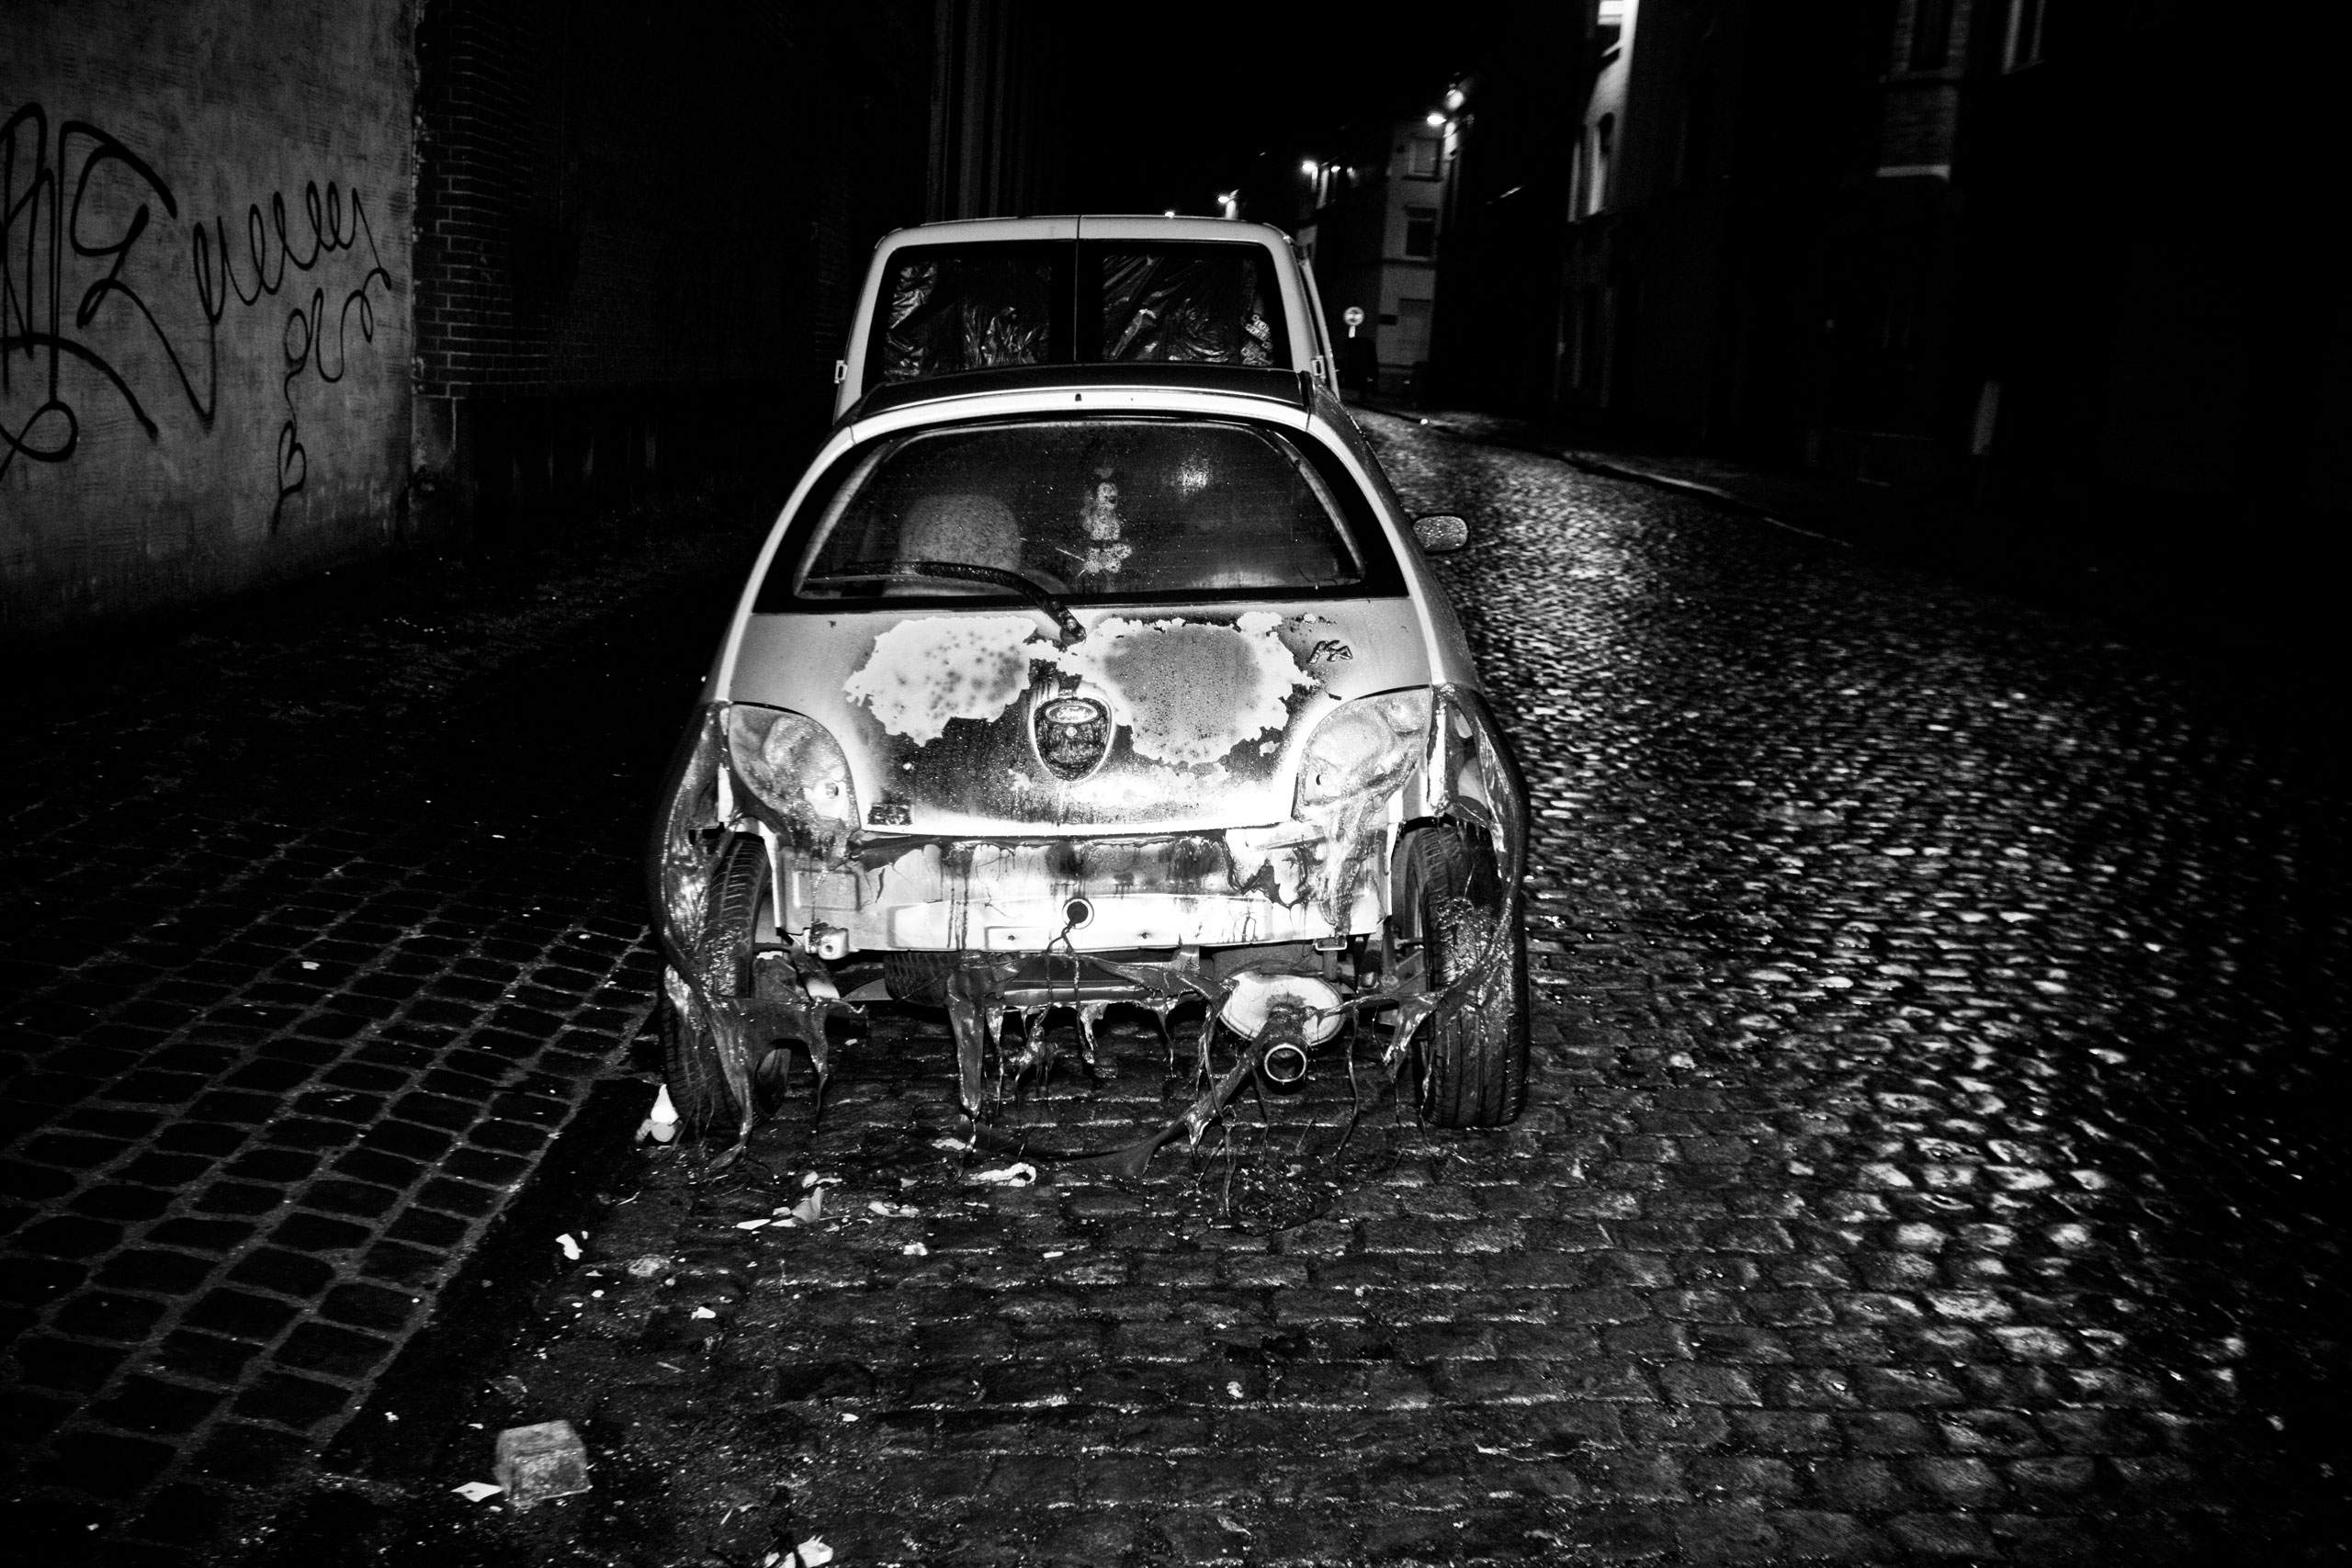 A burned car in the streets of Molenbeek, Brussels. Jan. 28, 2010.